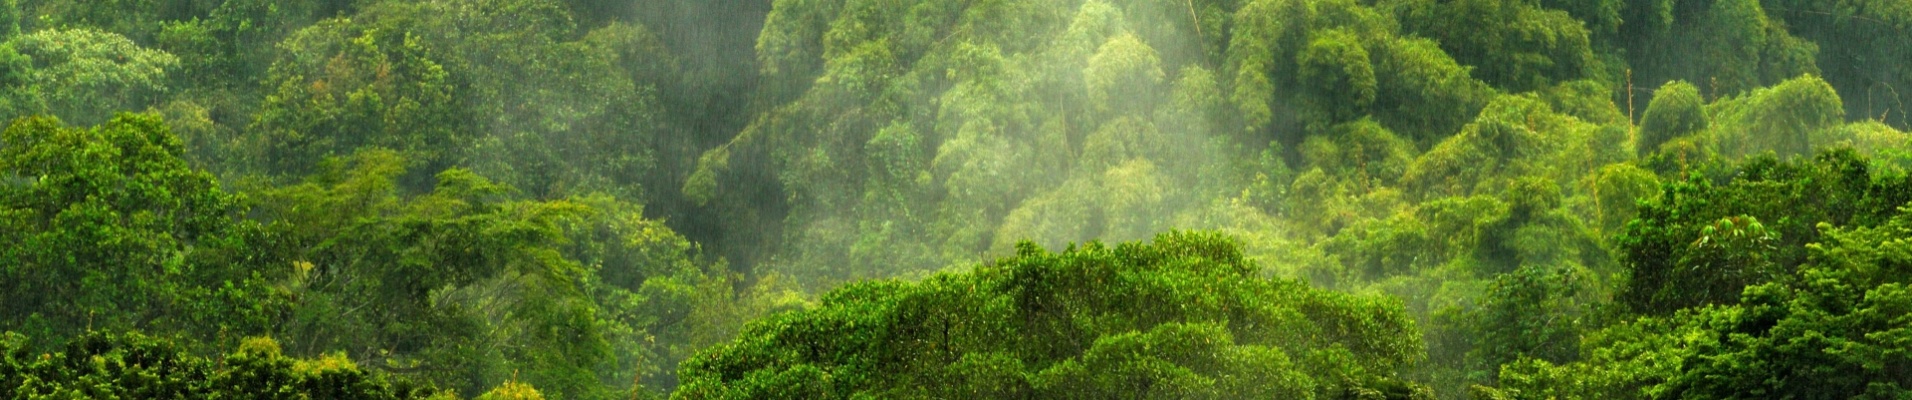 saison-pluie-rain-forest-colombie